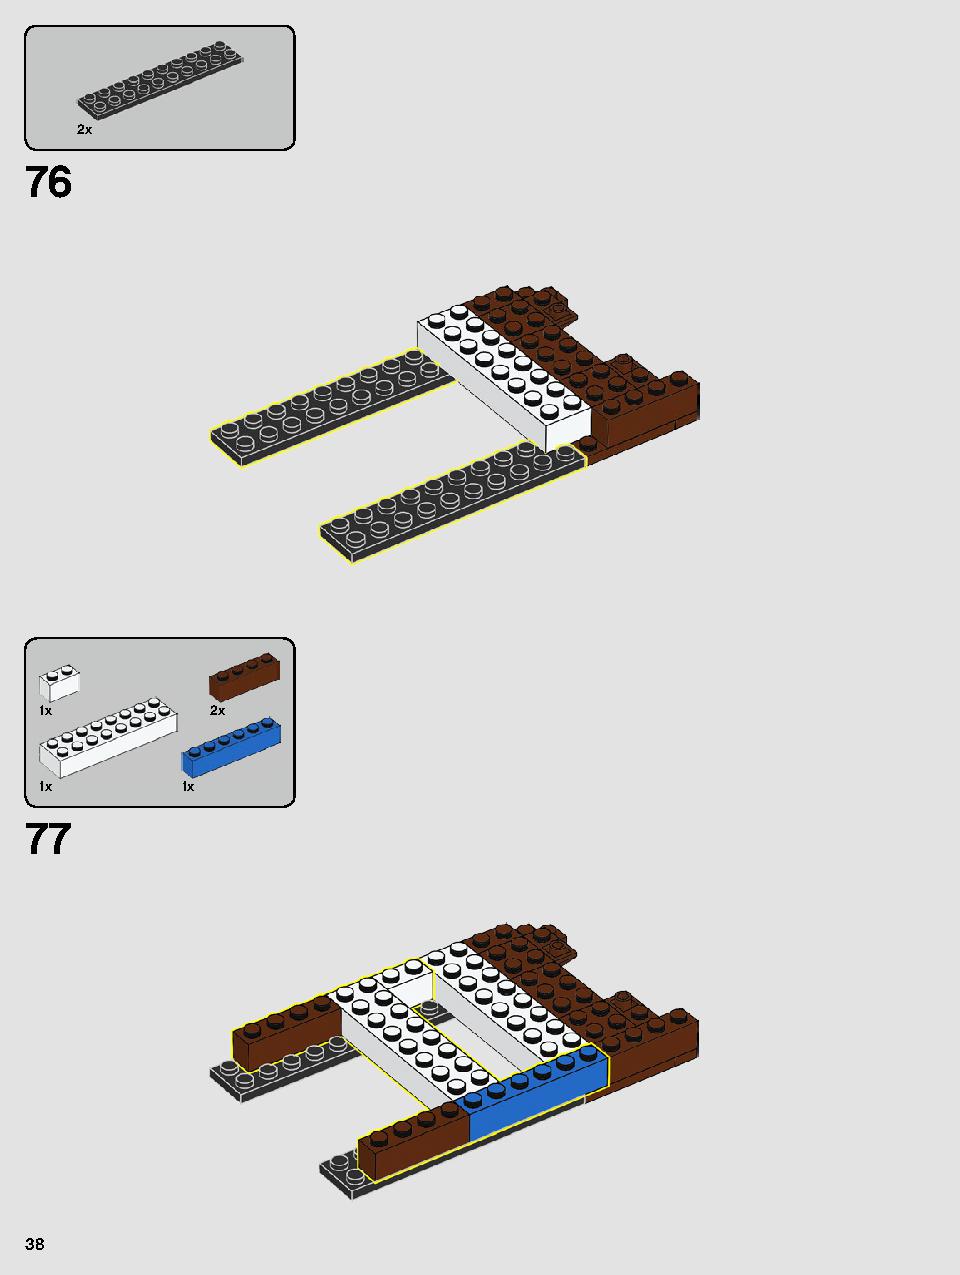 ヨーダ™ 75255 レゴの商品情報 レゴの説明書・組立方法 38 page